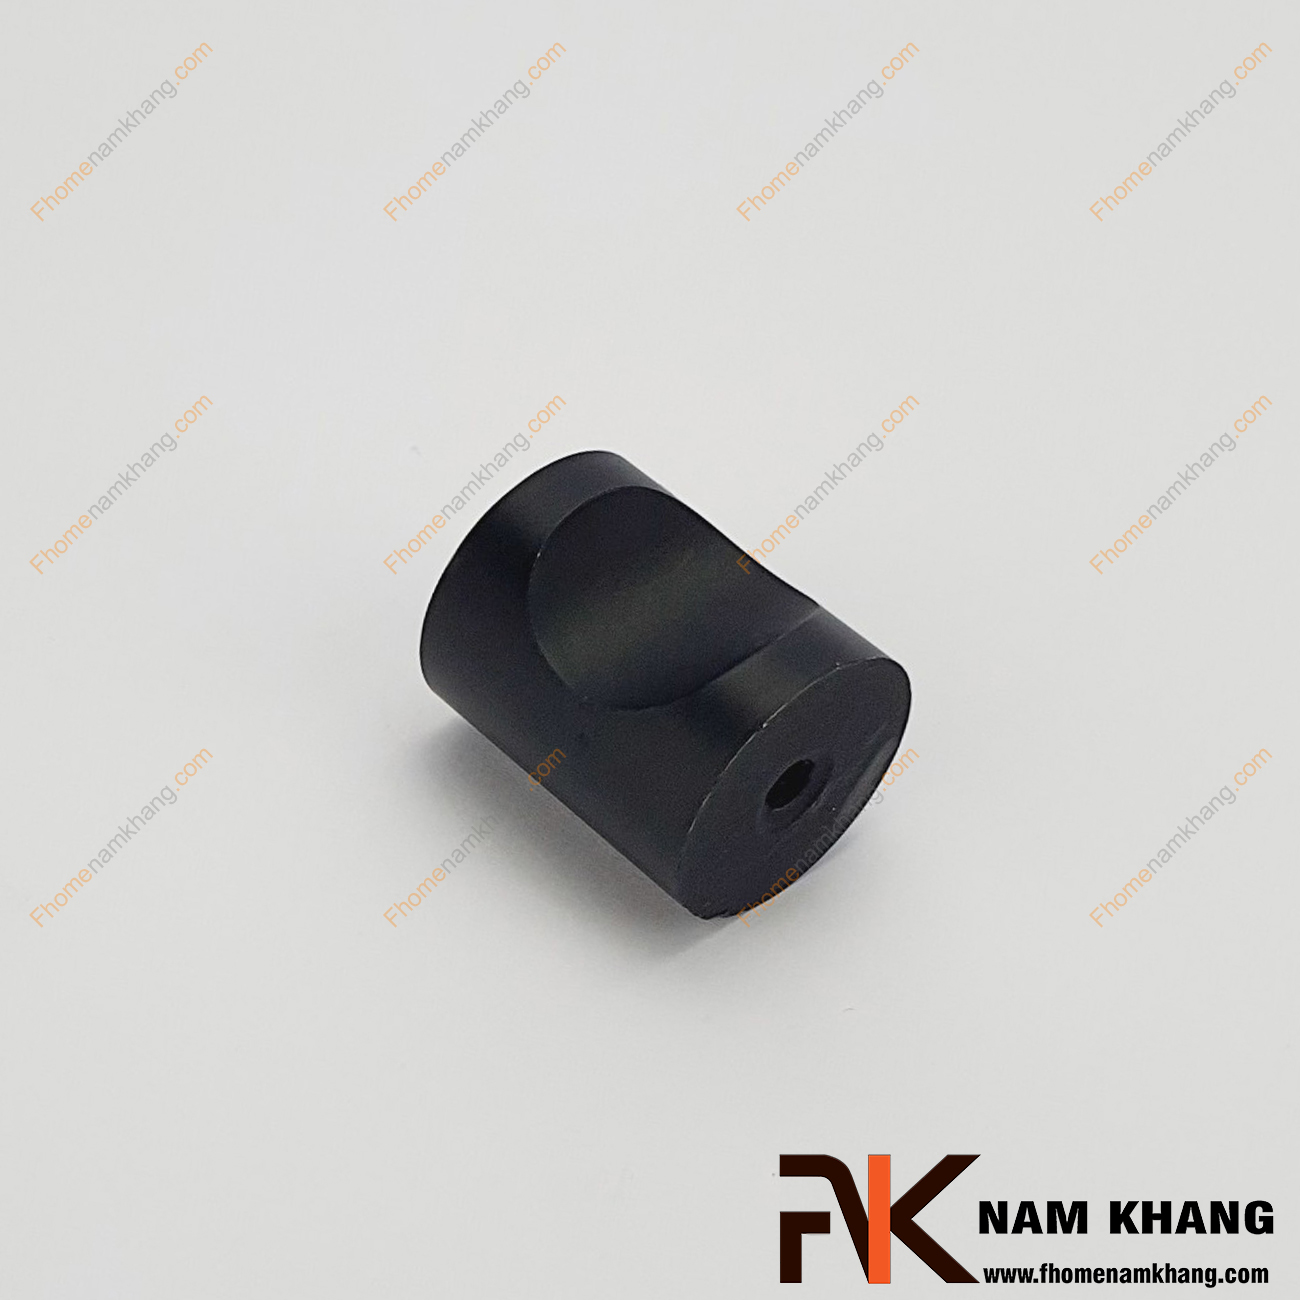 Núm cửa tủ màu đen NK057-D, sản phẩm phụ kiện tủ kệ nhỏ gọn được sử dụng rộng rãi trong sản xuất lắp đặt các dạng tủ kệ ngăn kéo và trong trang trí không gian nội ngoại thất.